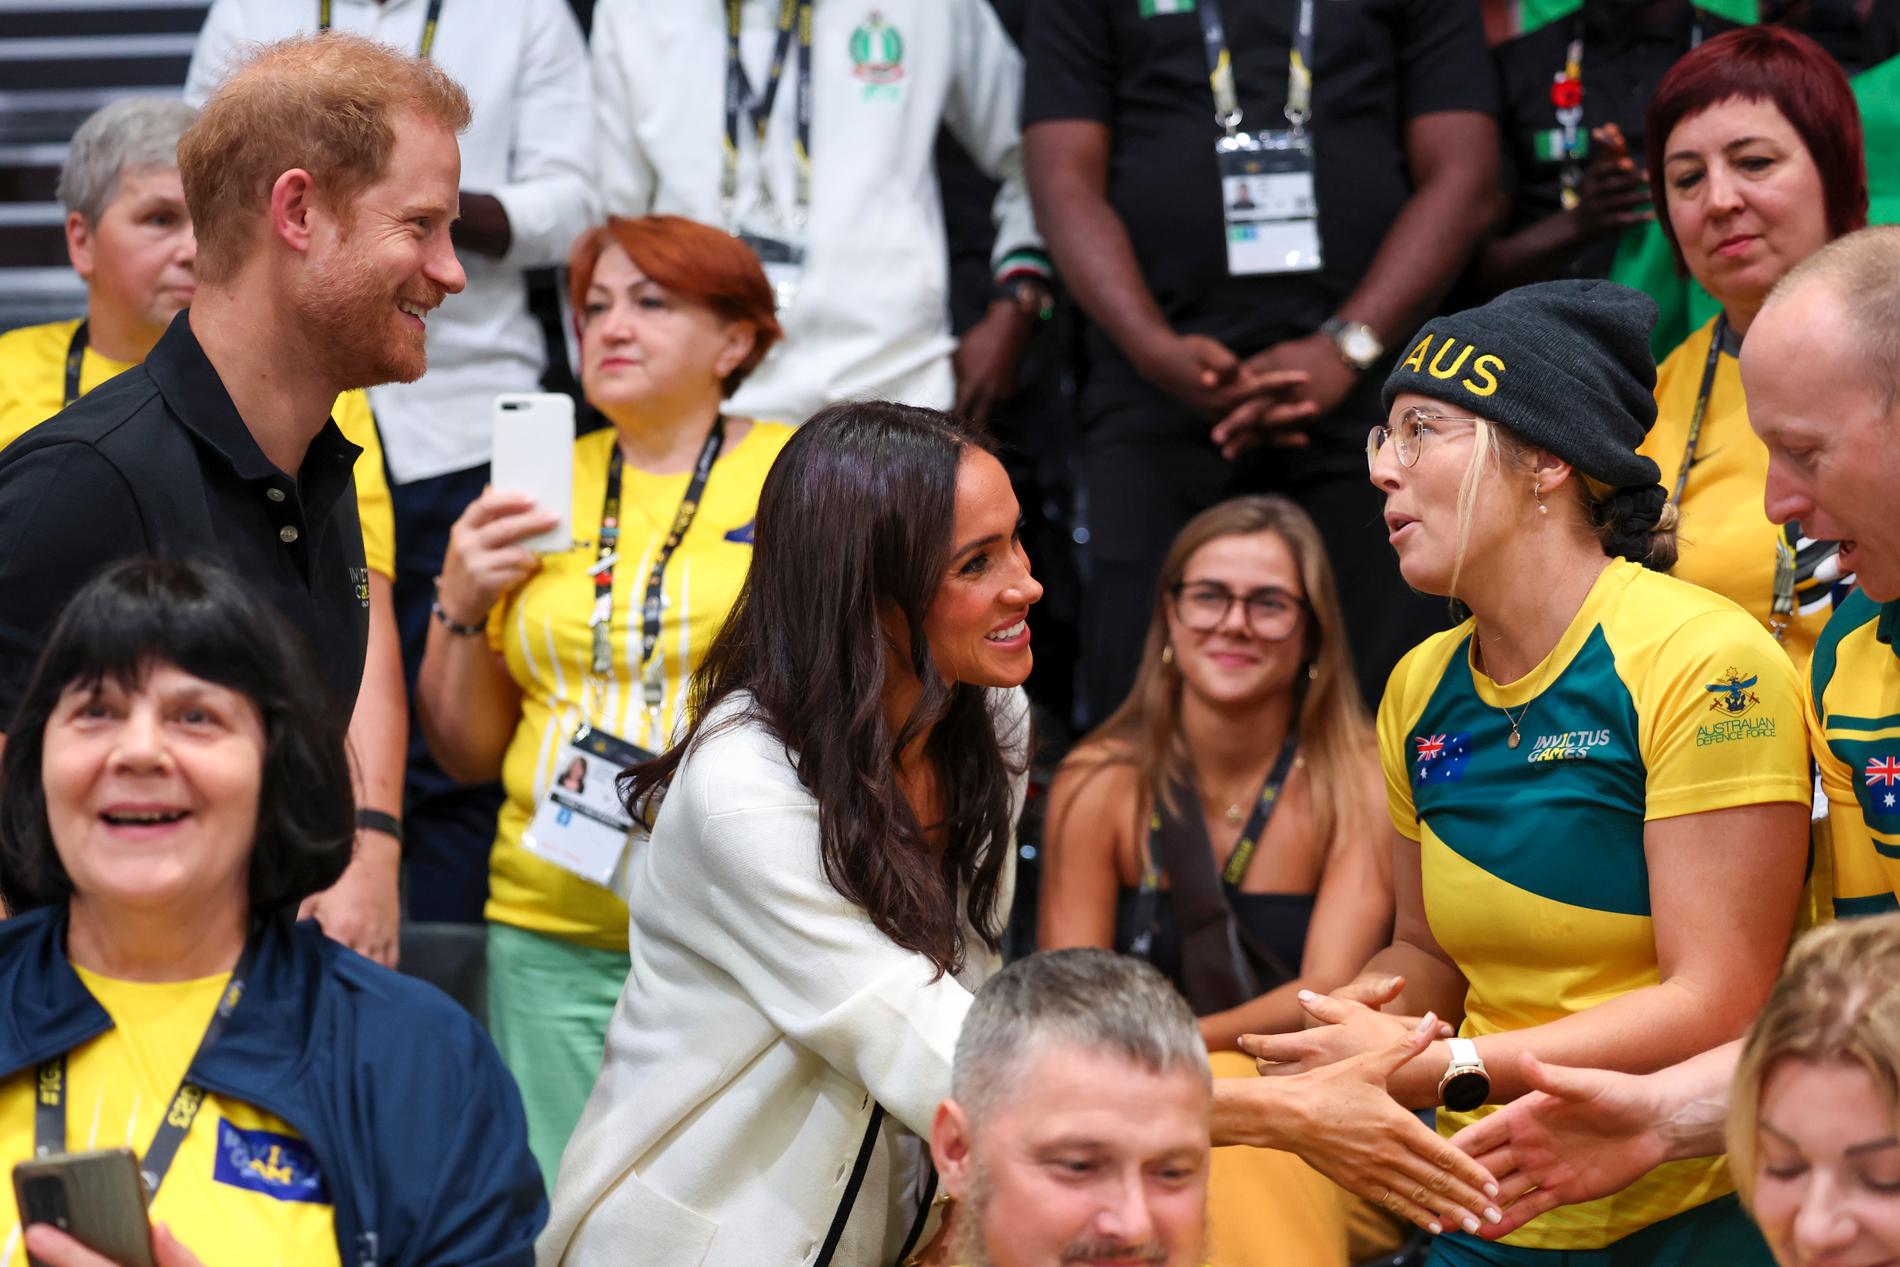 Strette di mano: il principe Harry e la duchessa Meghan incontrano i partecipanti a una partita di rugby su sedia a rotelle.